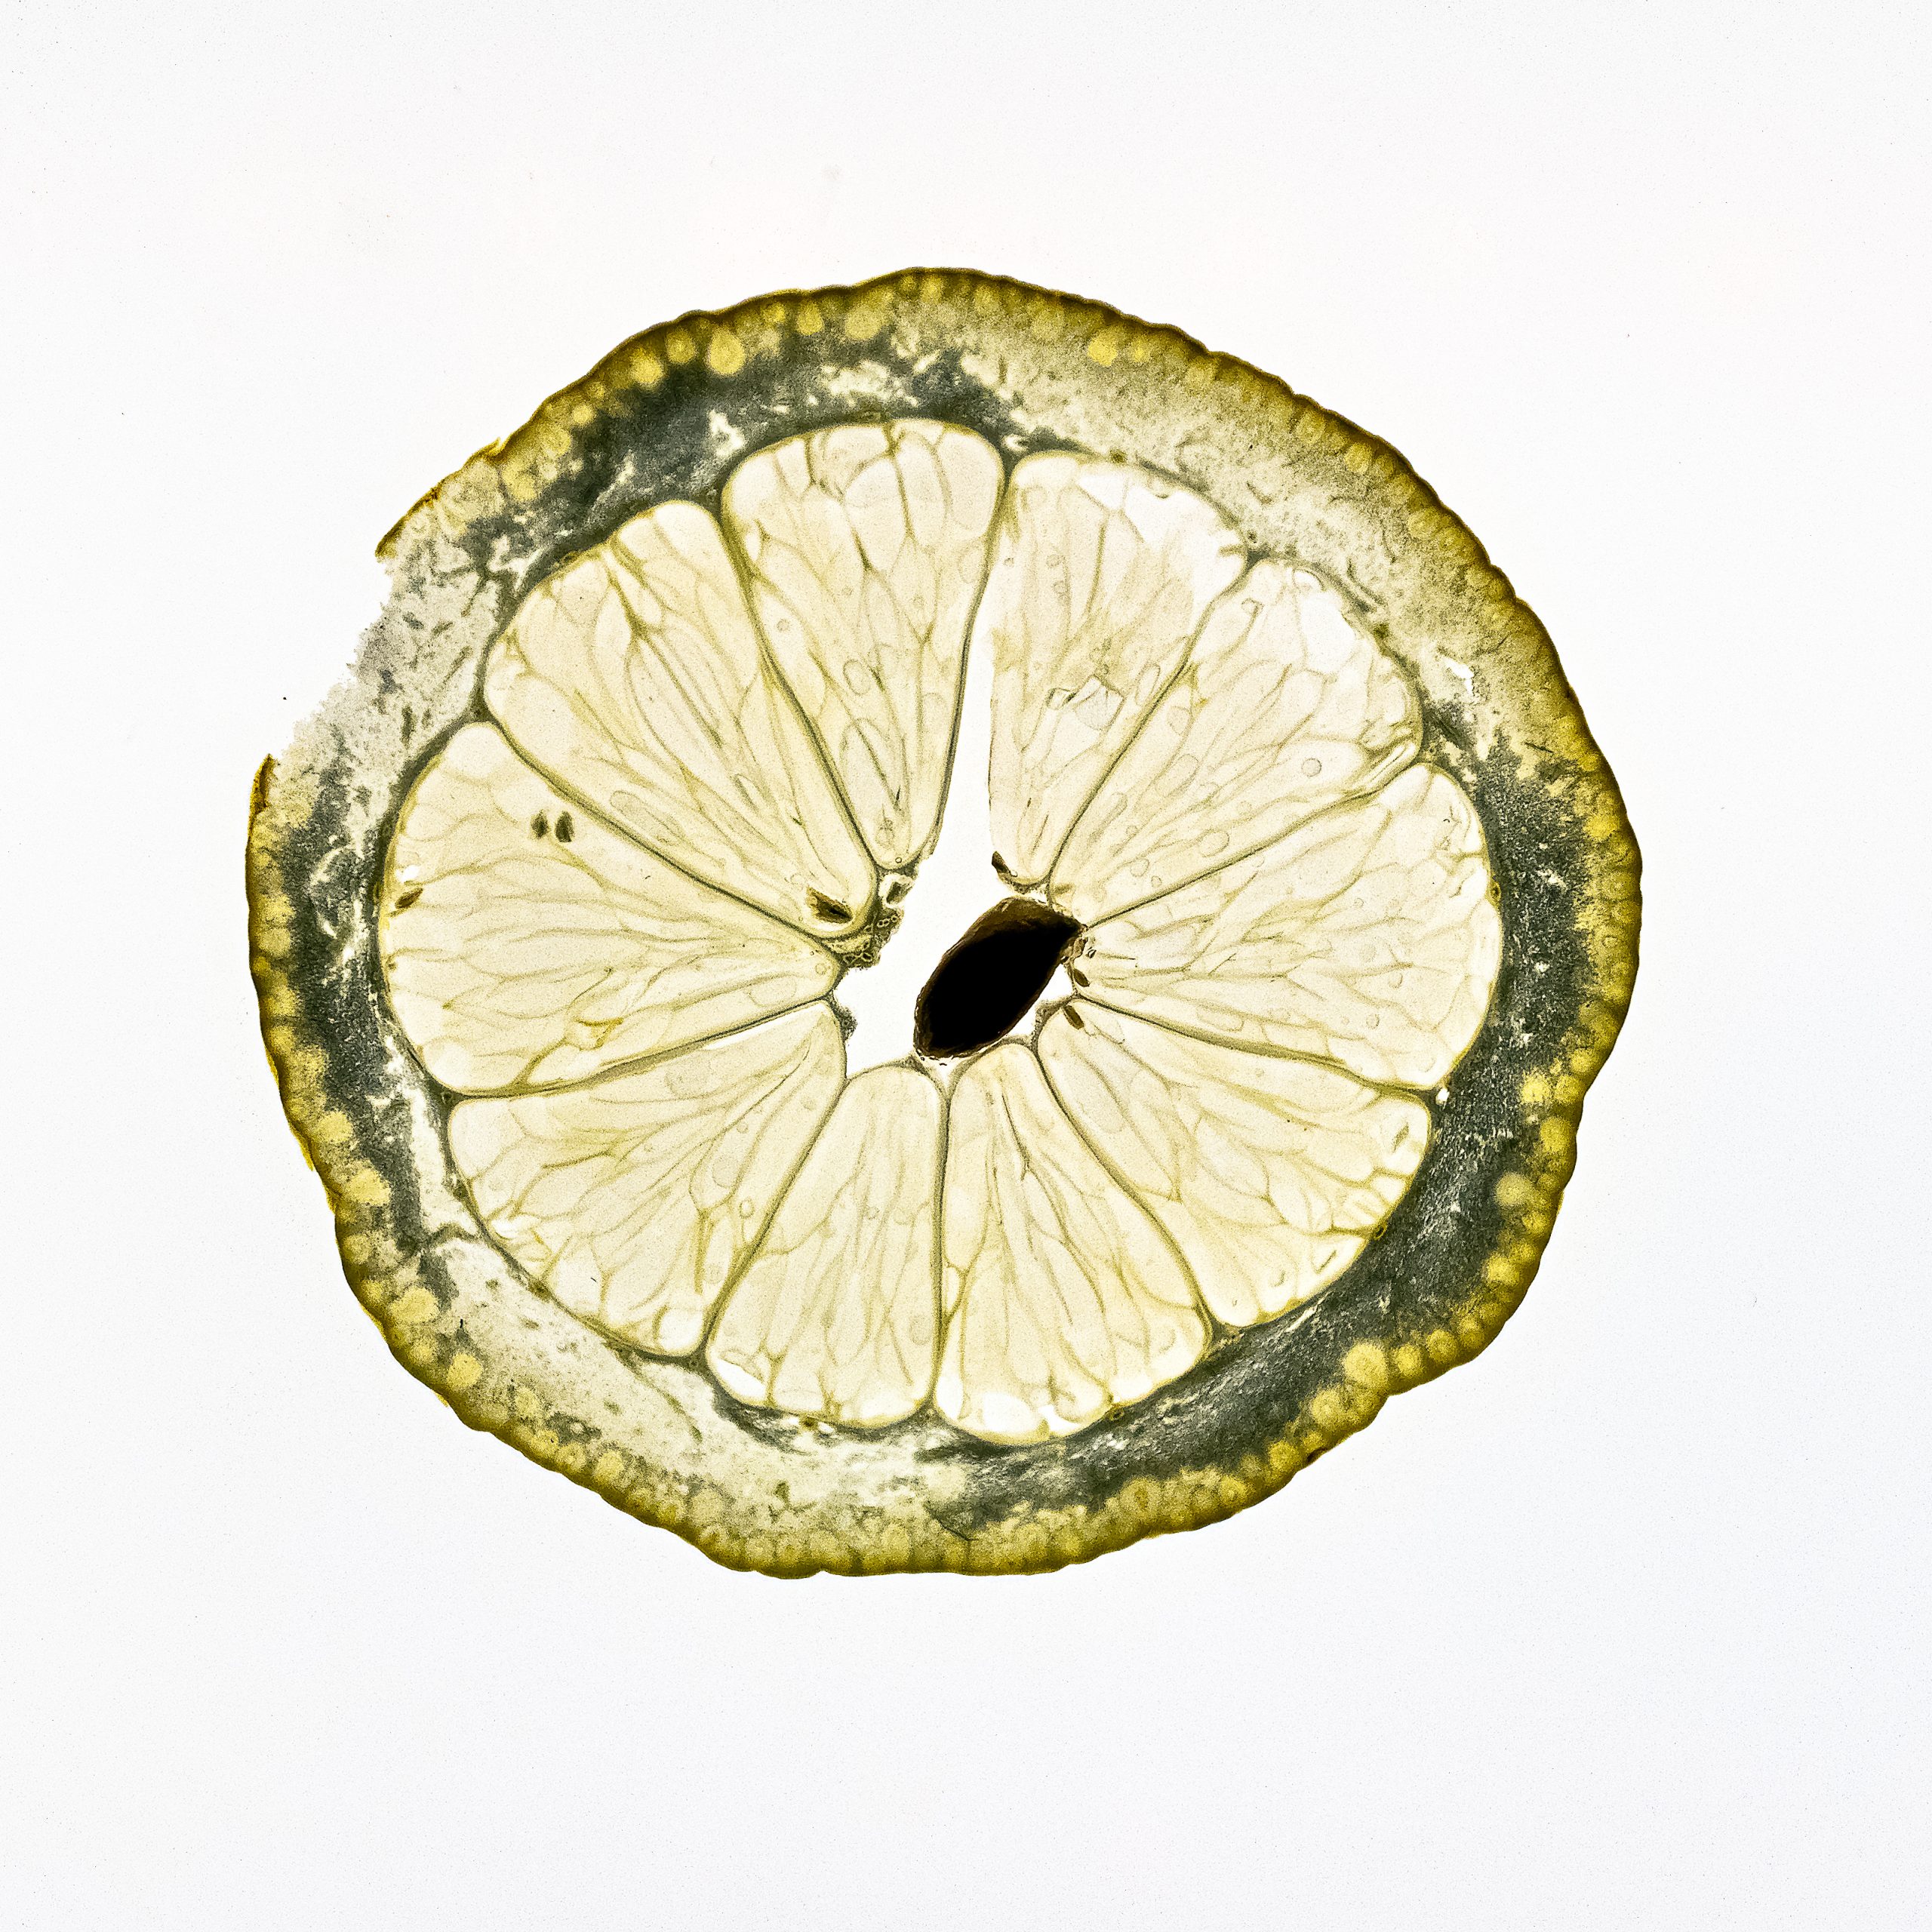 LemonOne – Ausbeutung von Fotografen?